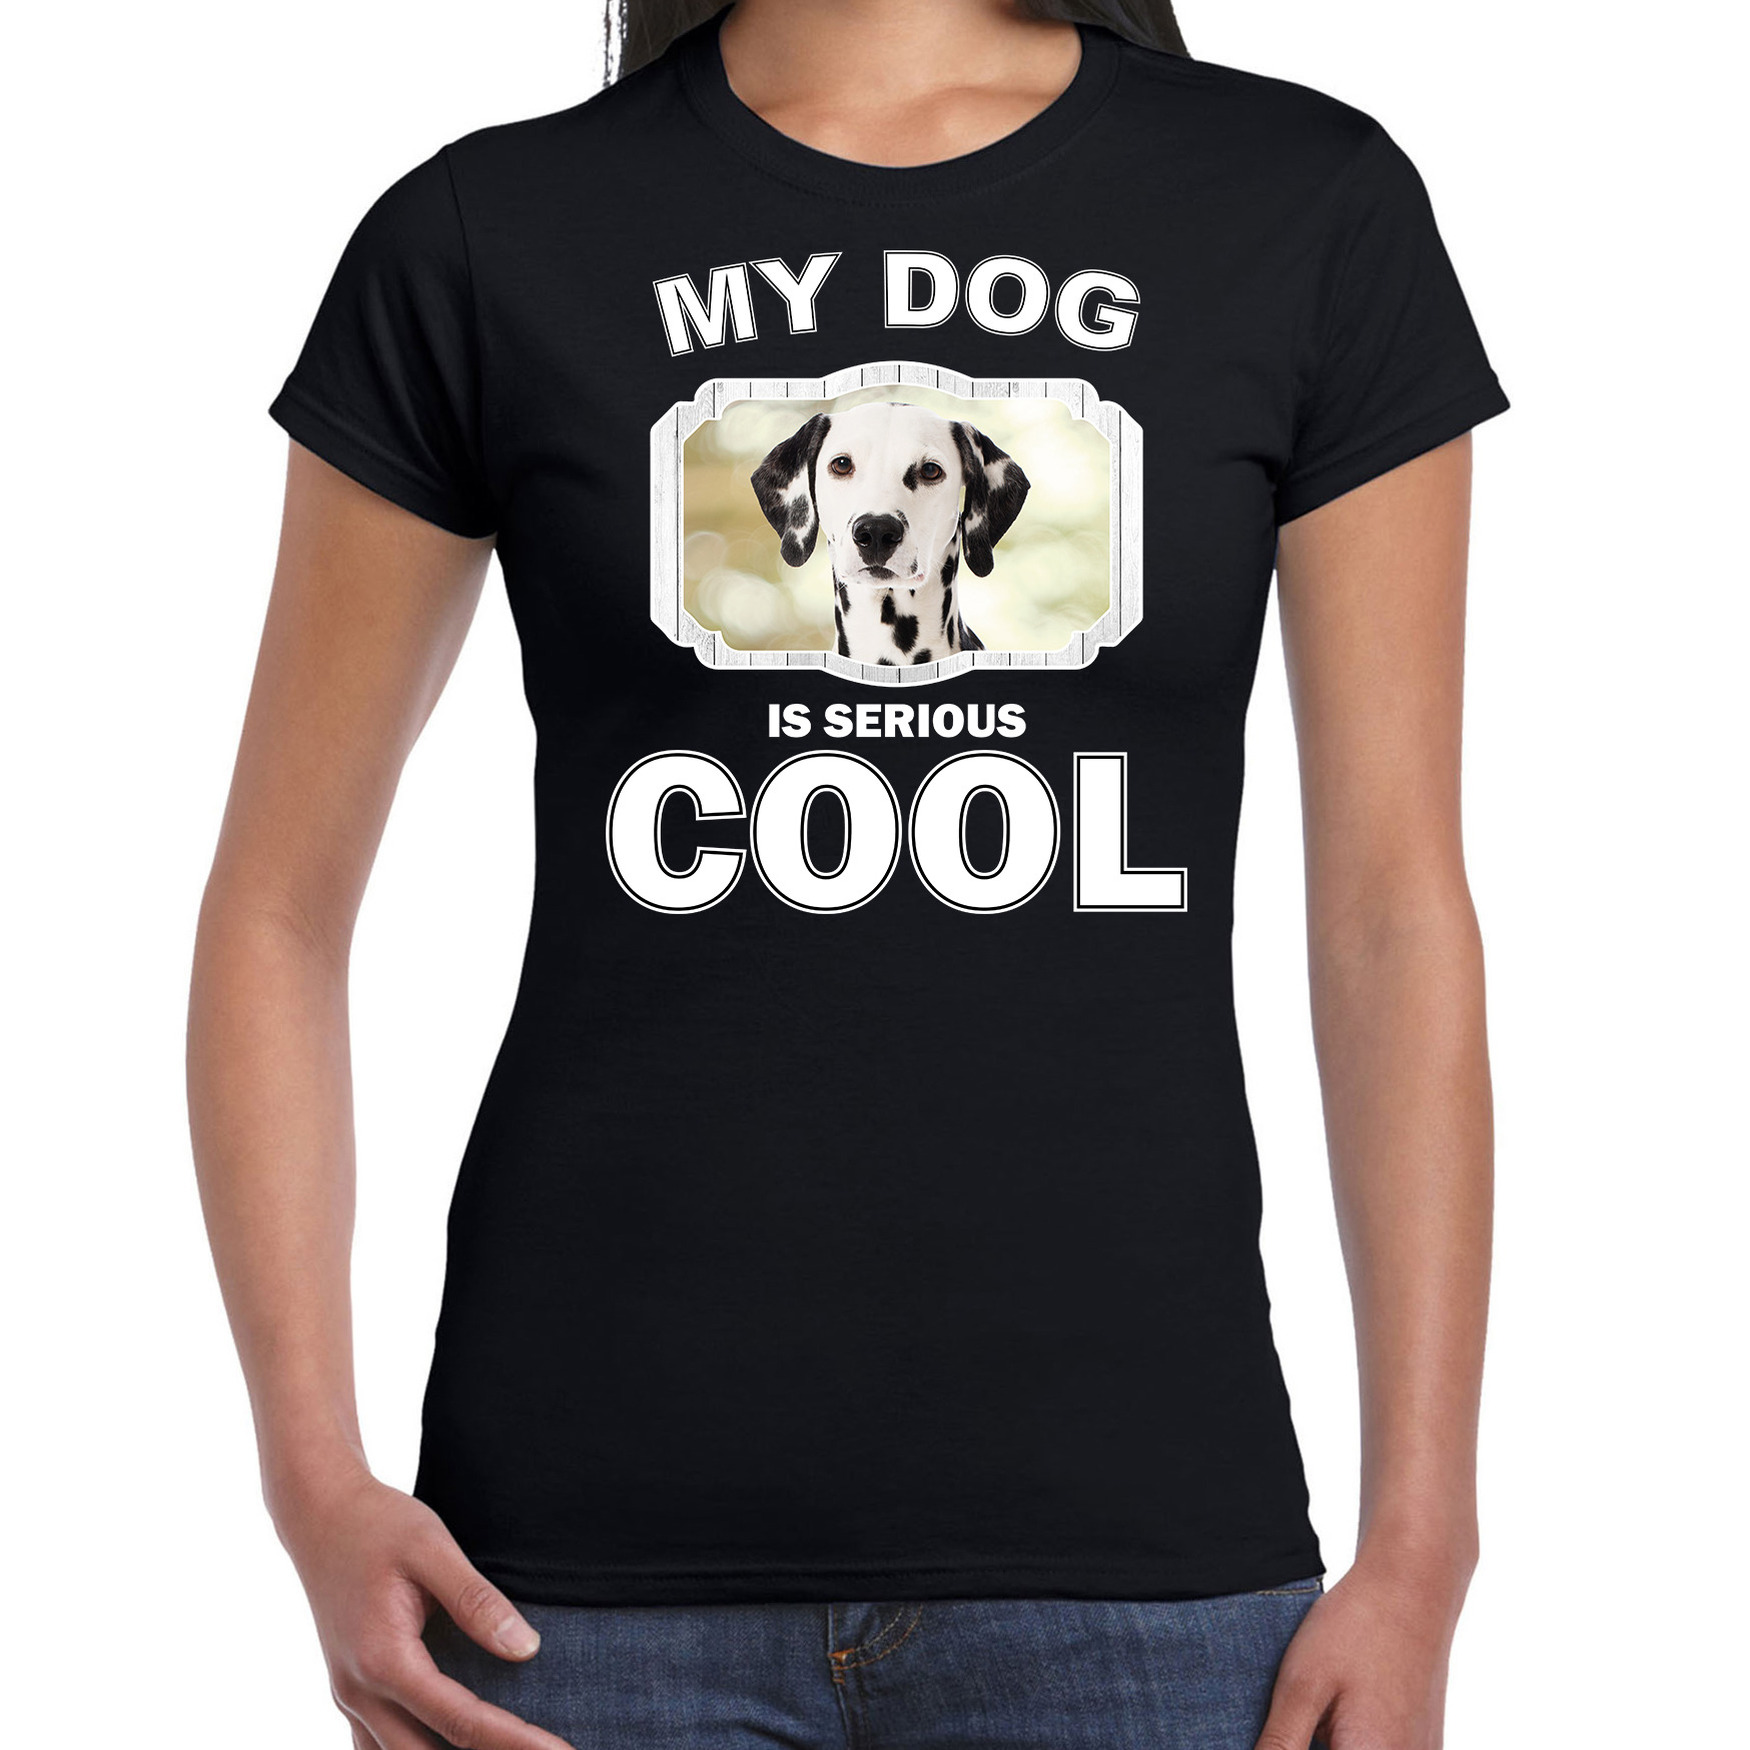 Dalmatiers honden t-shirt my dog is serious cool zwart voor dames